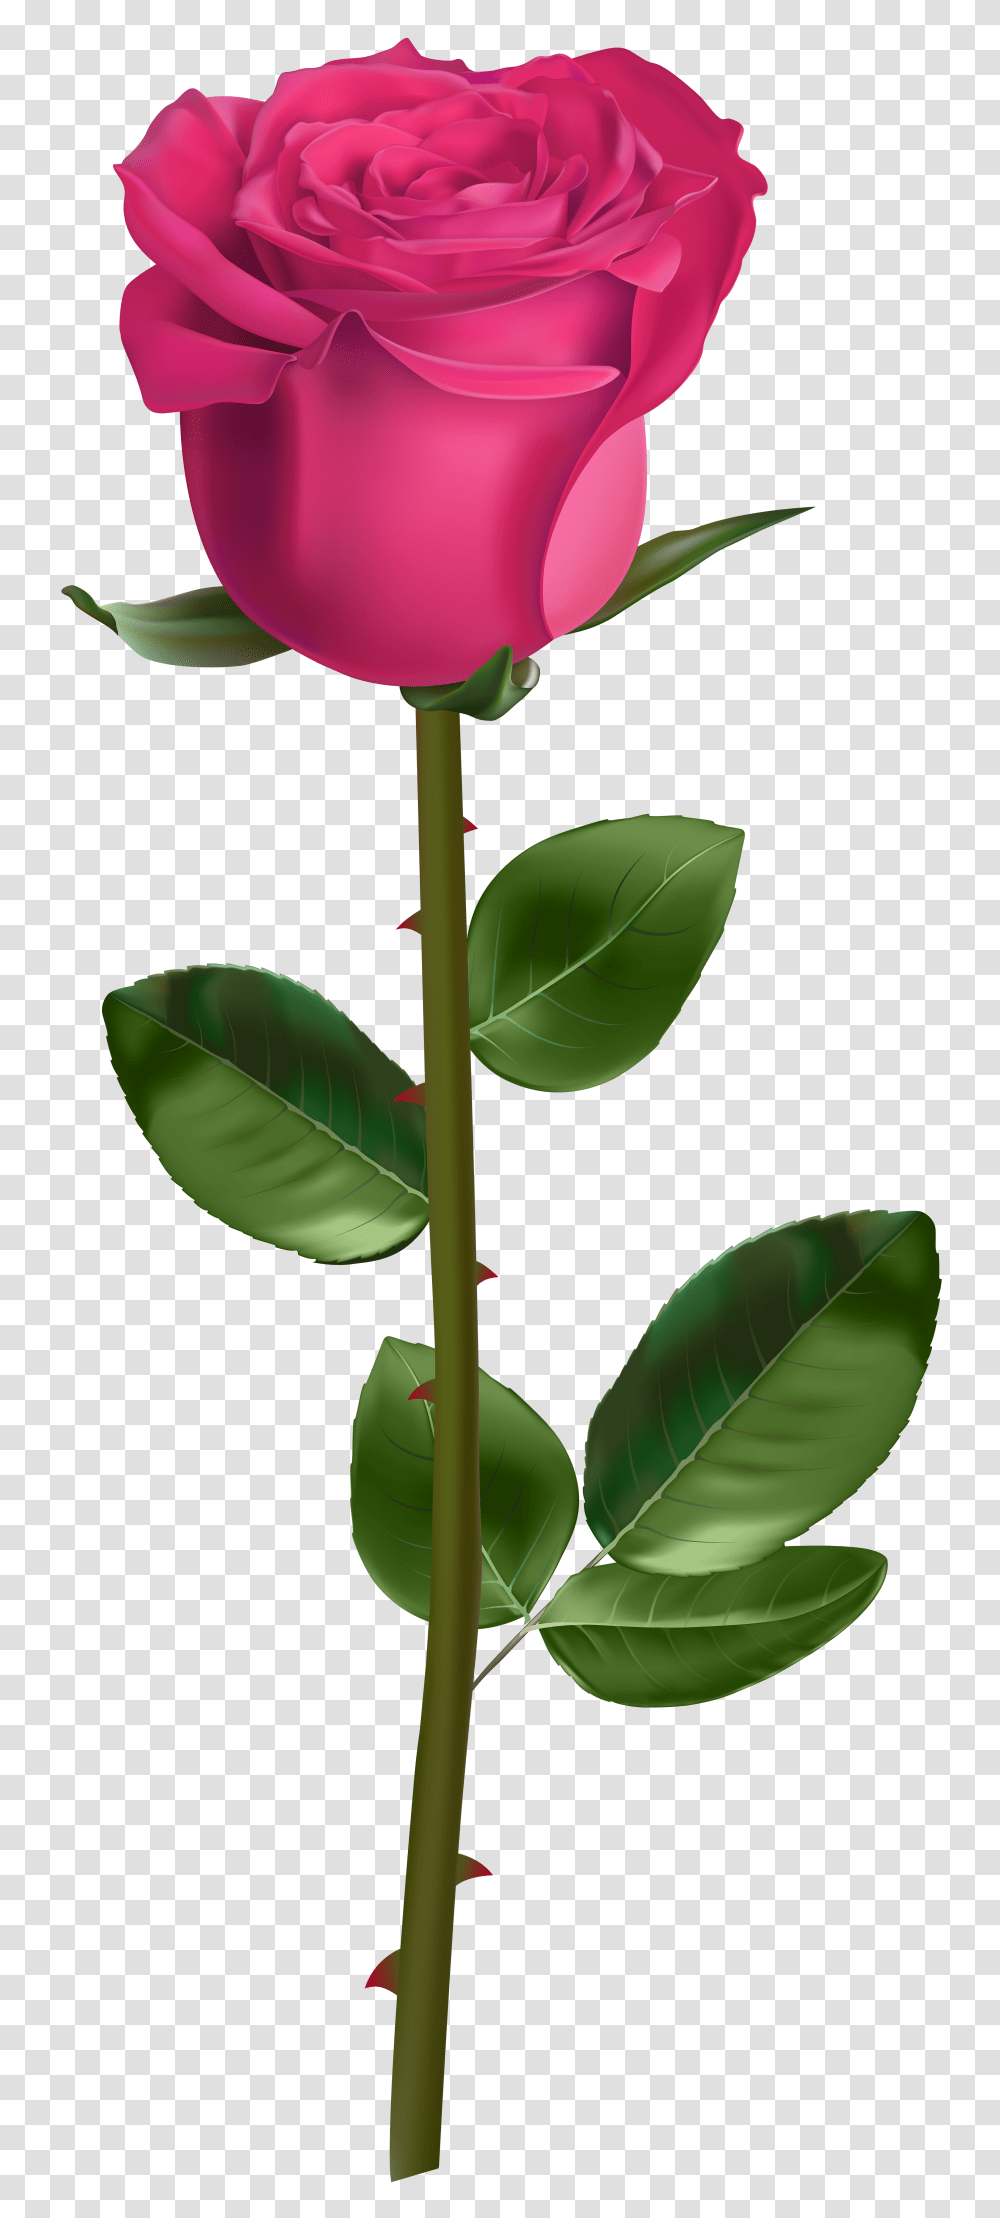 Rose With Stem Pink, Plant, Flower, Blossom, Leaf Transparent Png